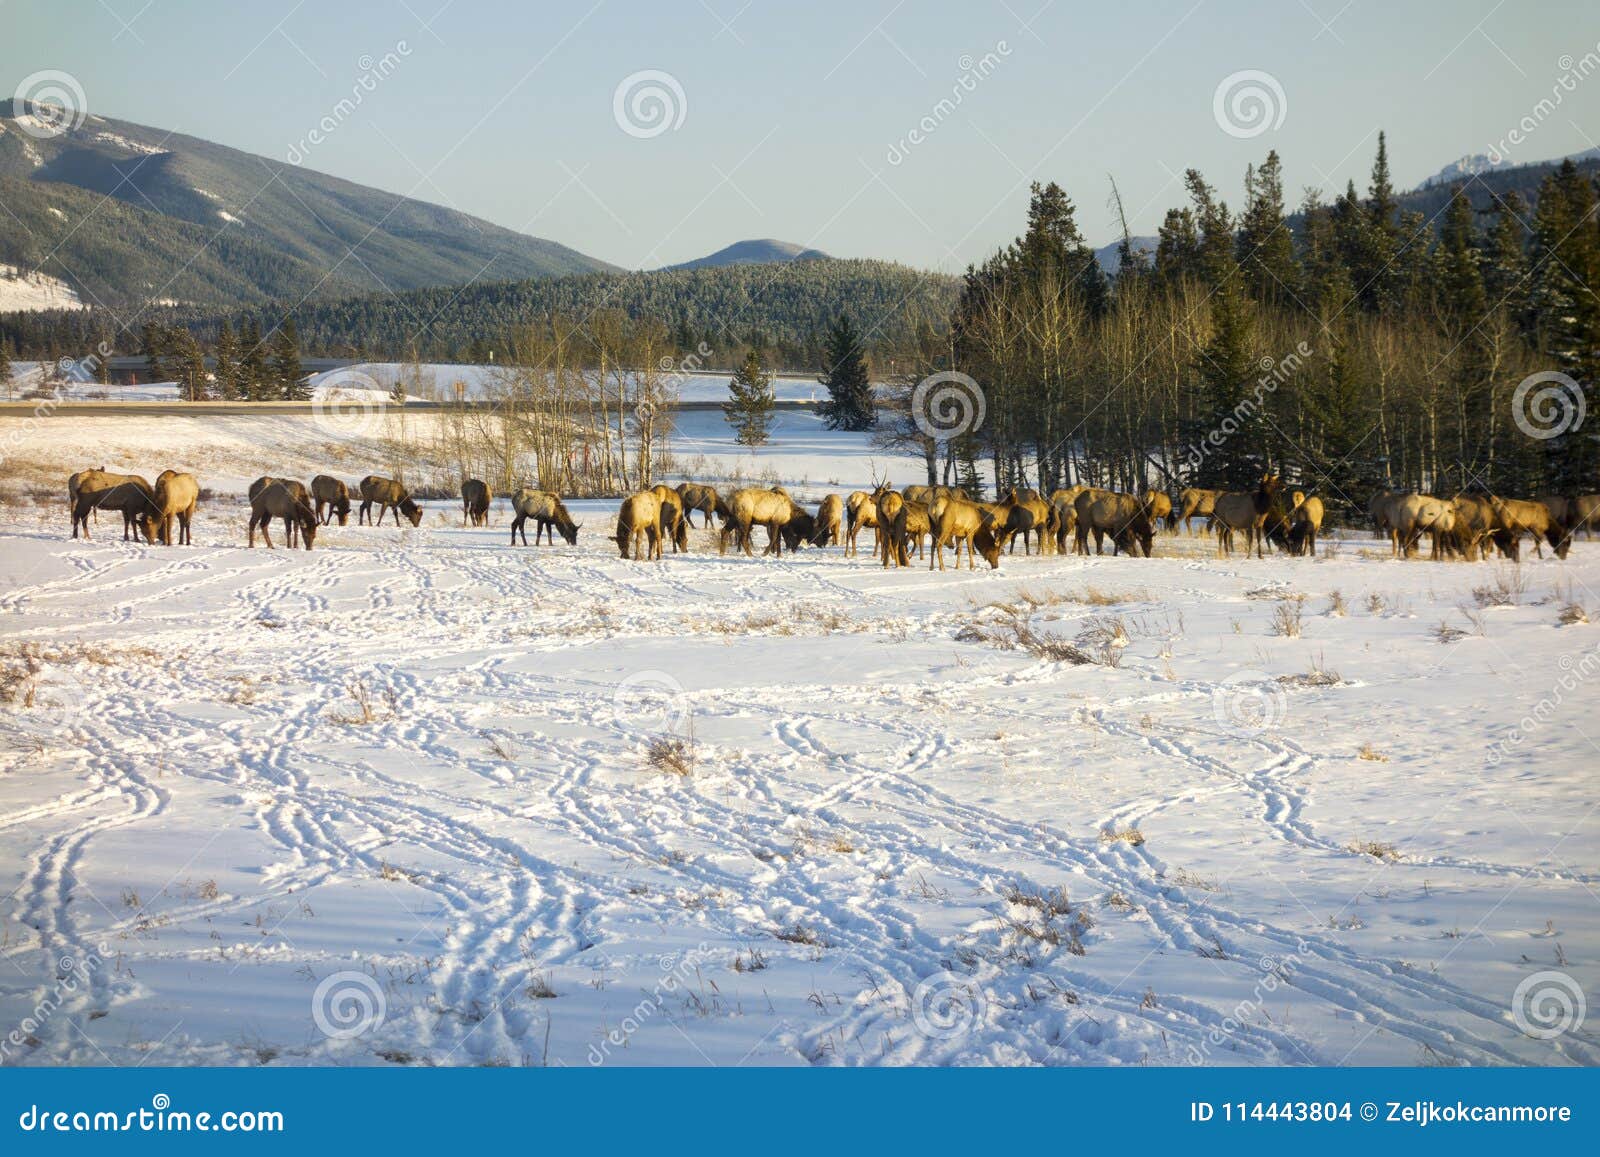 elk herd feeding in early springtime on snow covered alberta foothills